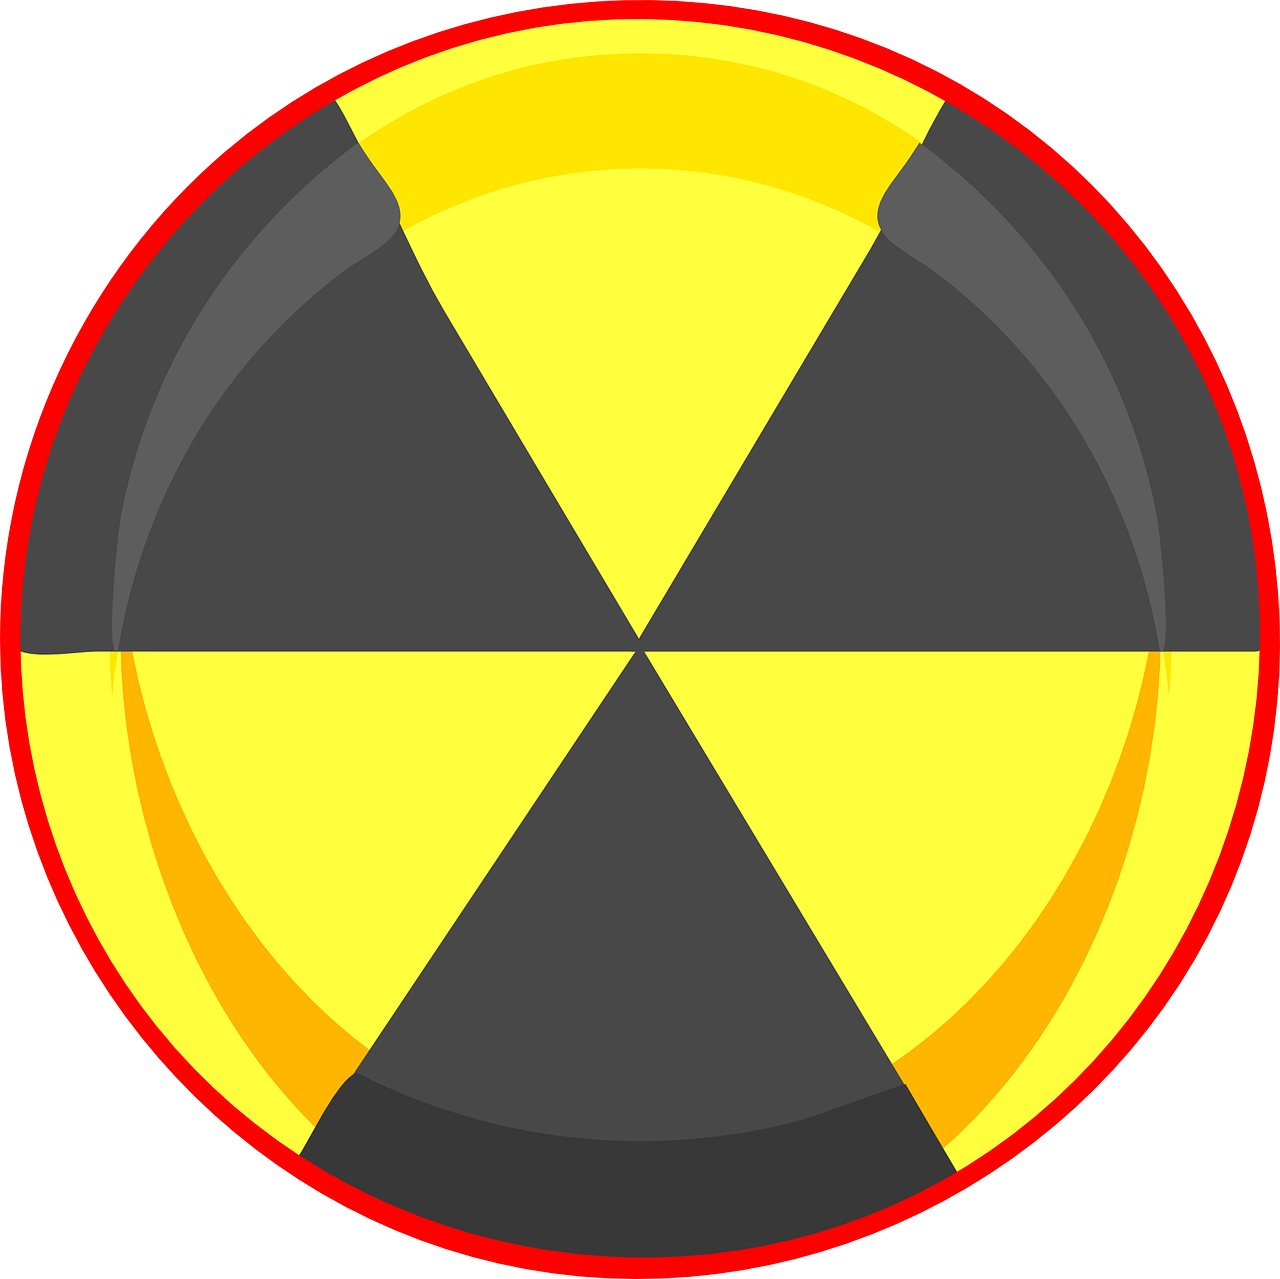 Branduolinė, Simboliai, Ženklai, Nuke, Energija, Industrija, Pramoninis, Radiacija, Radioaktyvus, Cheminis